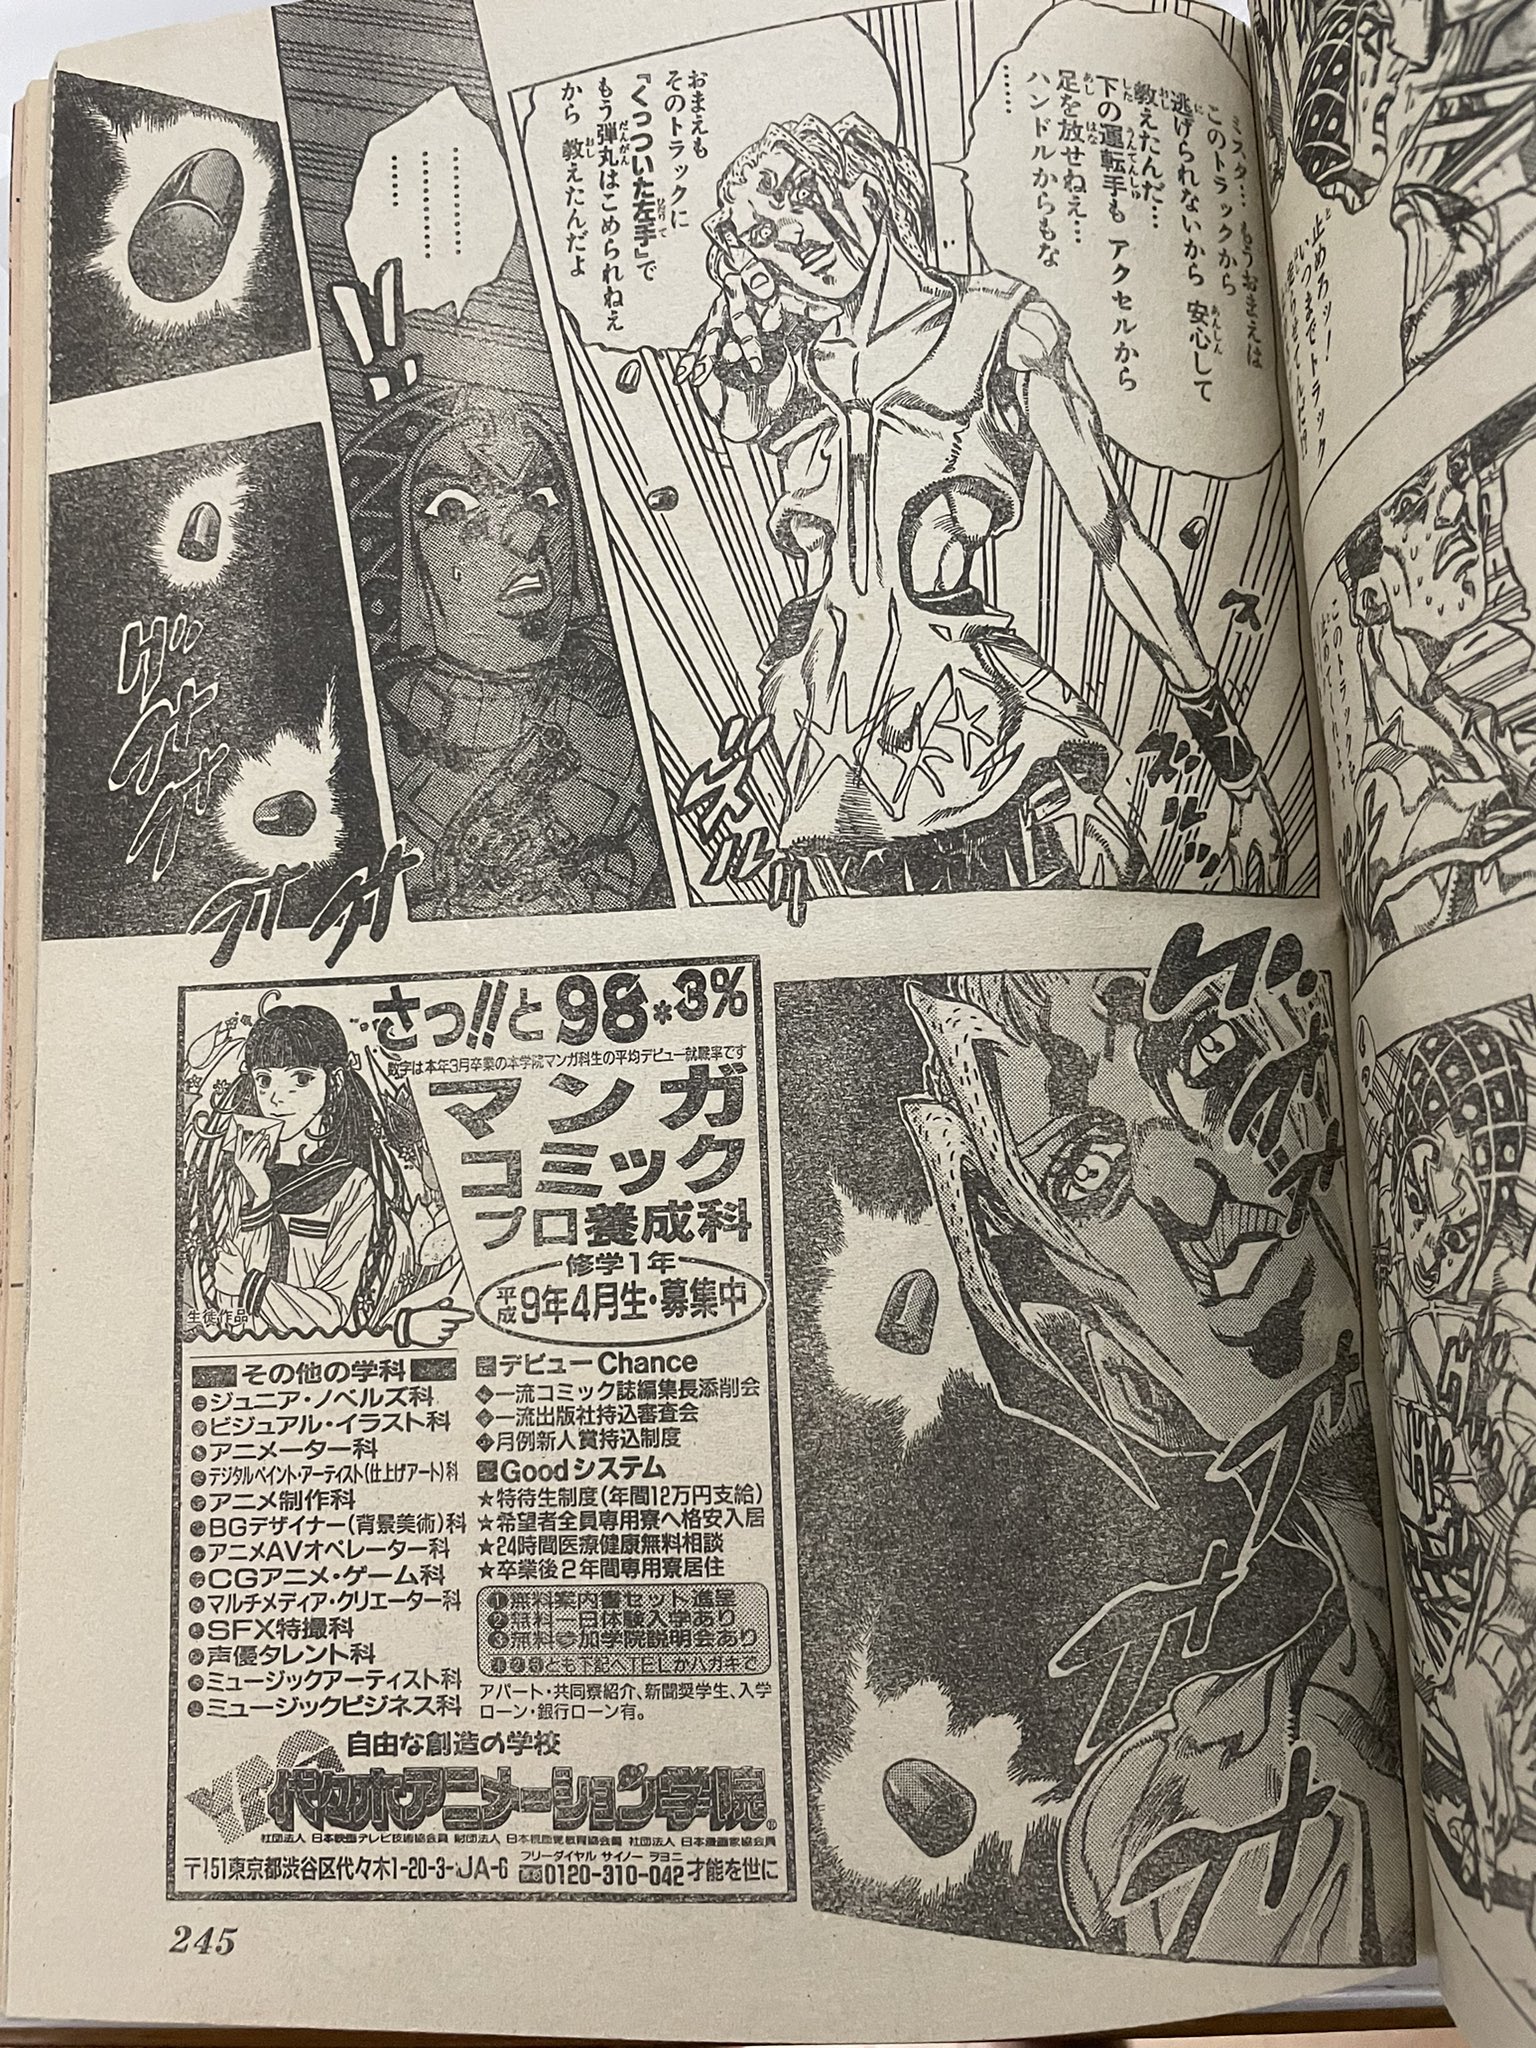 과거 일본 만화잡지들이 하던 짓